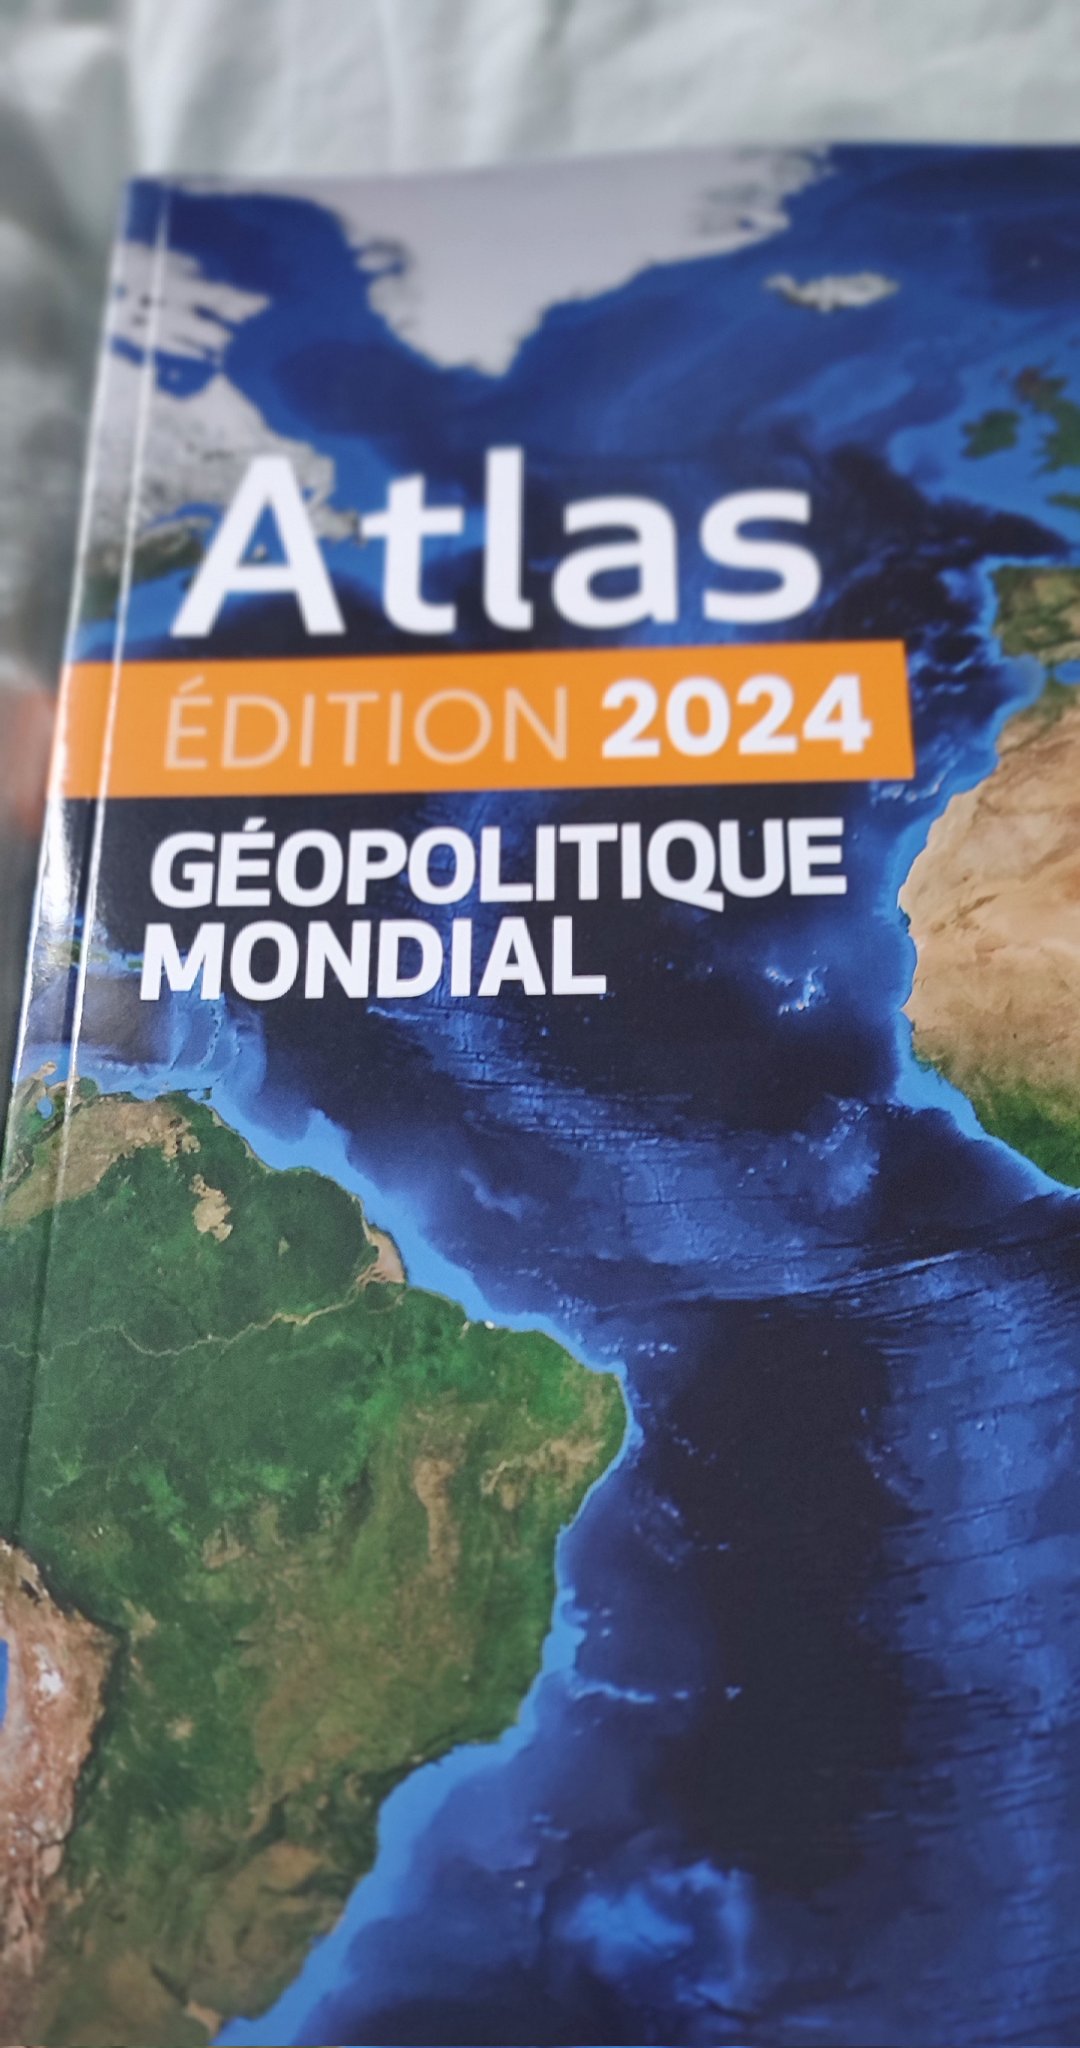 Gaëlle Sutton on X: Des cartes réalisées avec l'équipe de Carto, pour le  dernier atlas géopolitique mondial 🗺️  / X